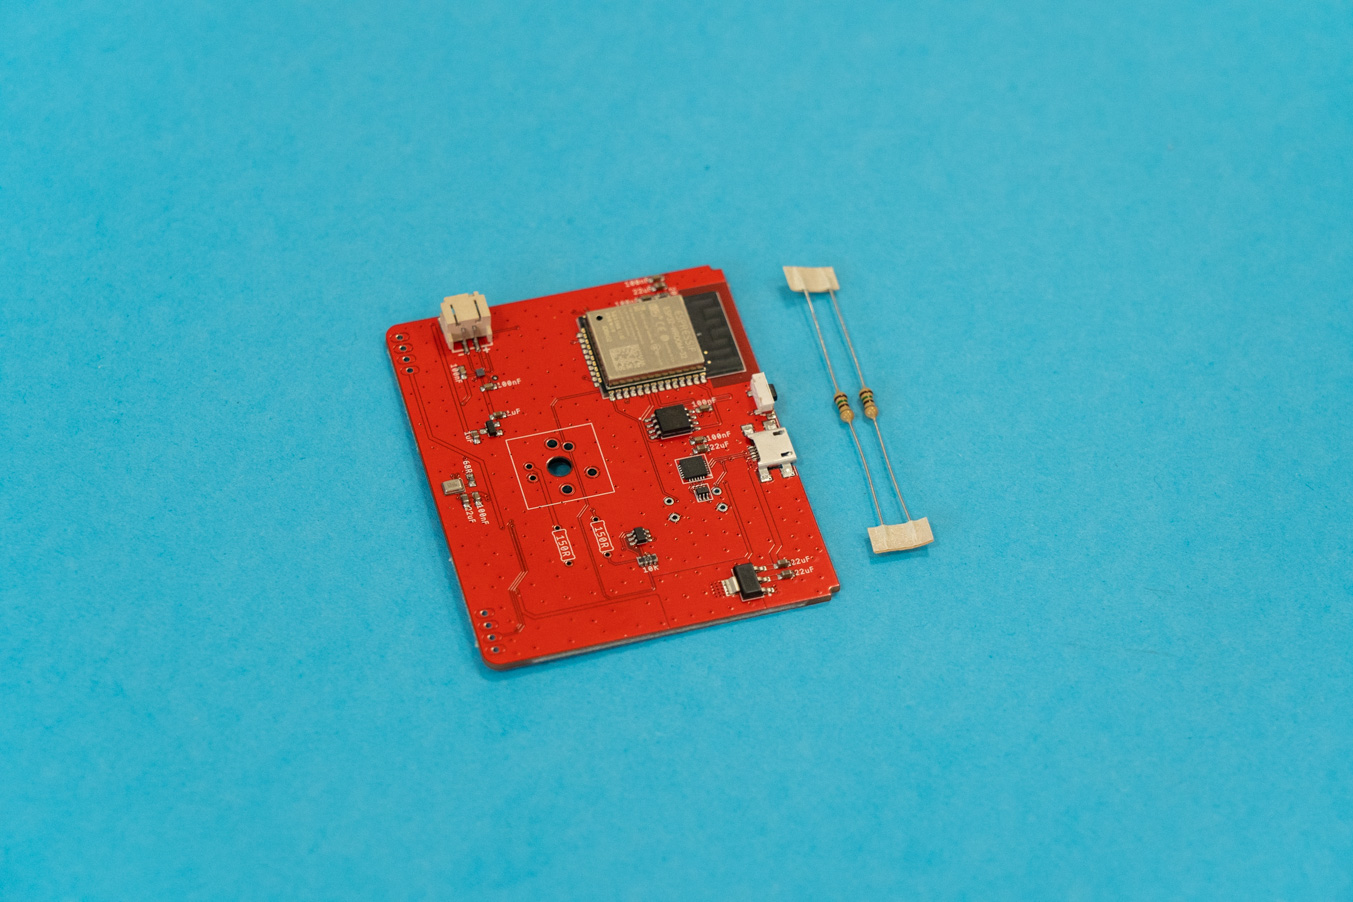 Main circuit board + 2 resistors